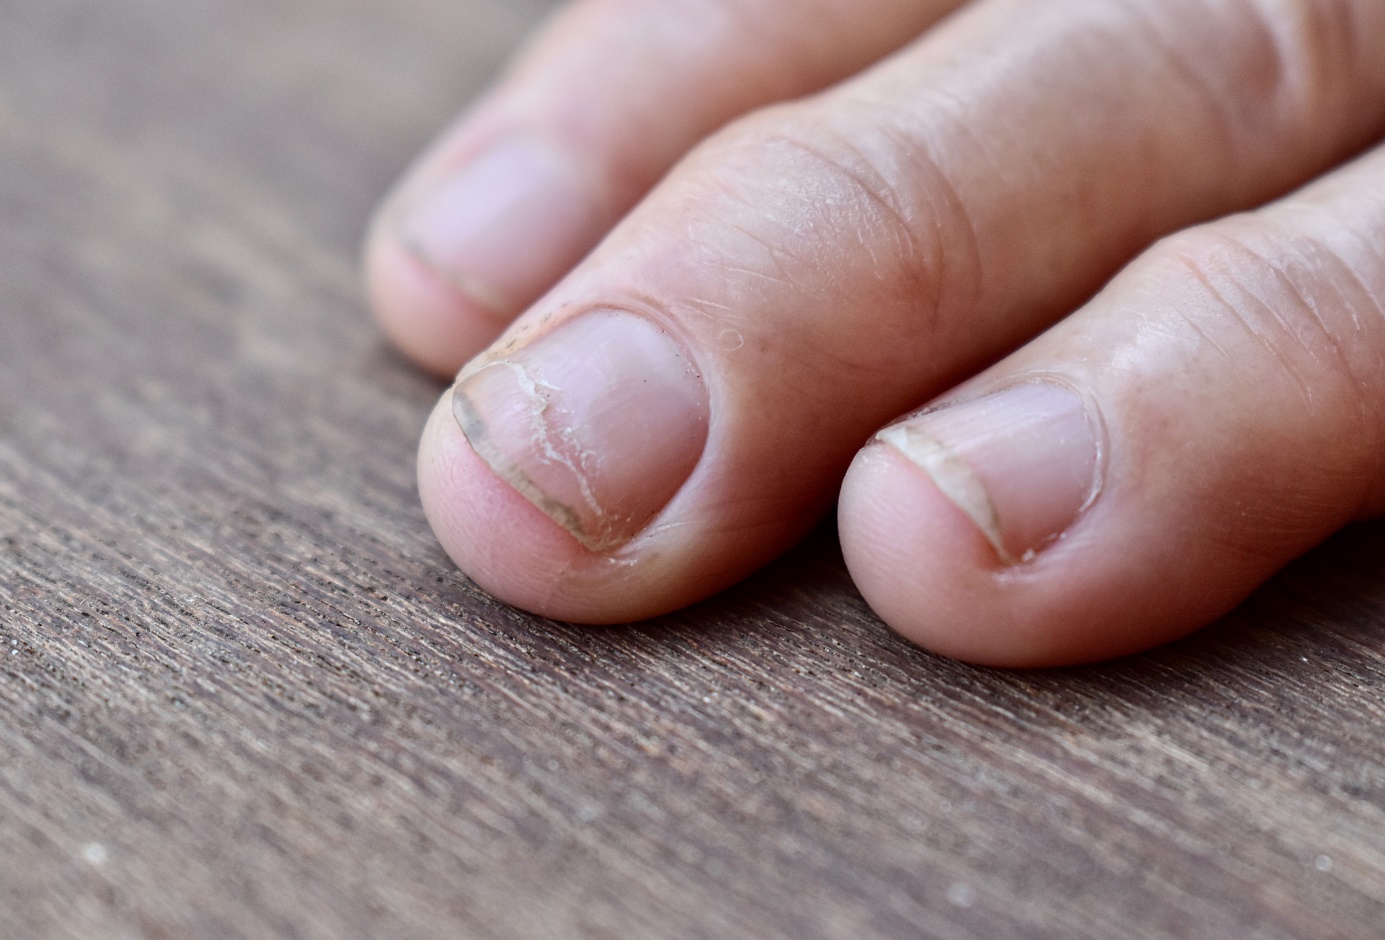 Řezná linie v onychoschizie - na nehtu prstu